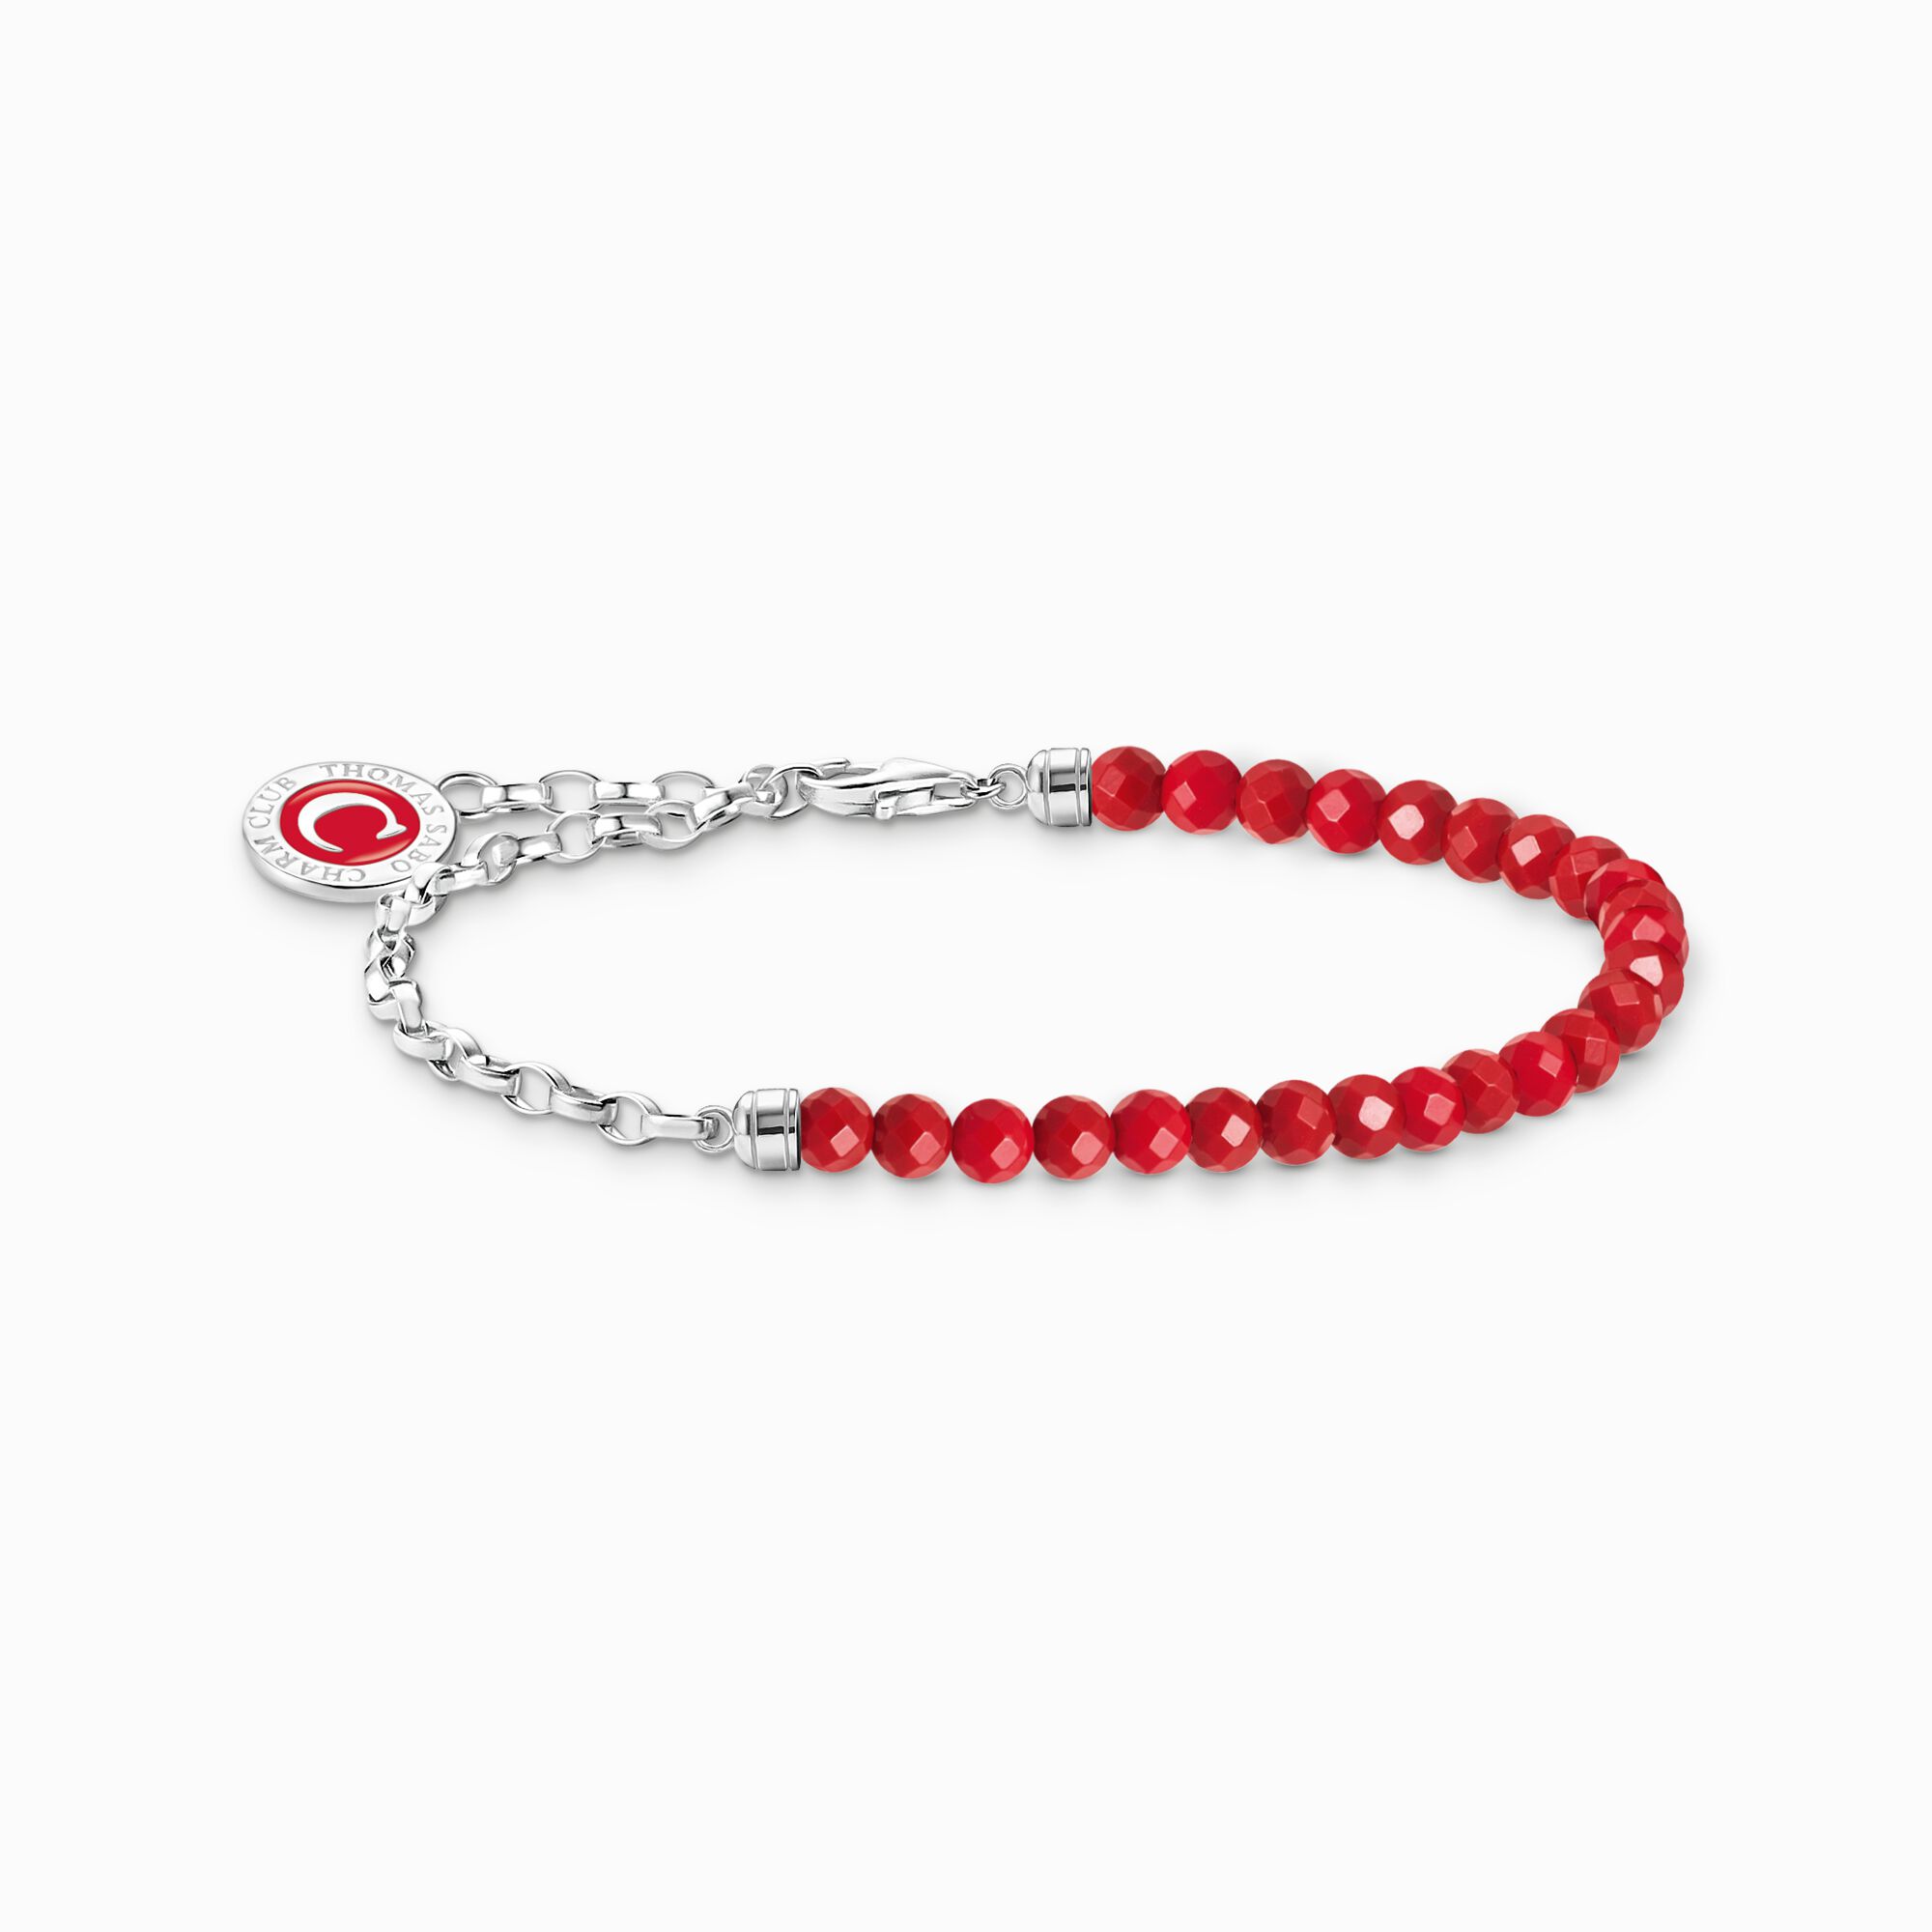 Member Charm-Armband rote Beads und Gliederelemente Silber aus der Charm Club Kollektion im Online Shop von THOMAS SABO